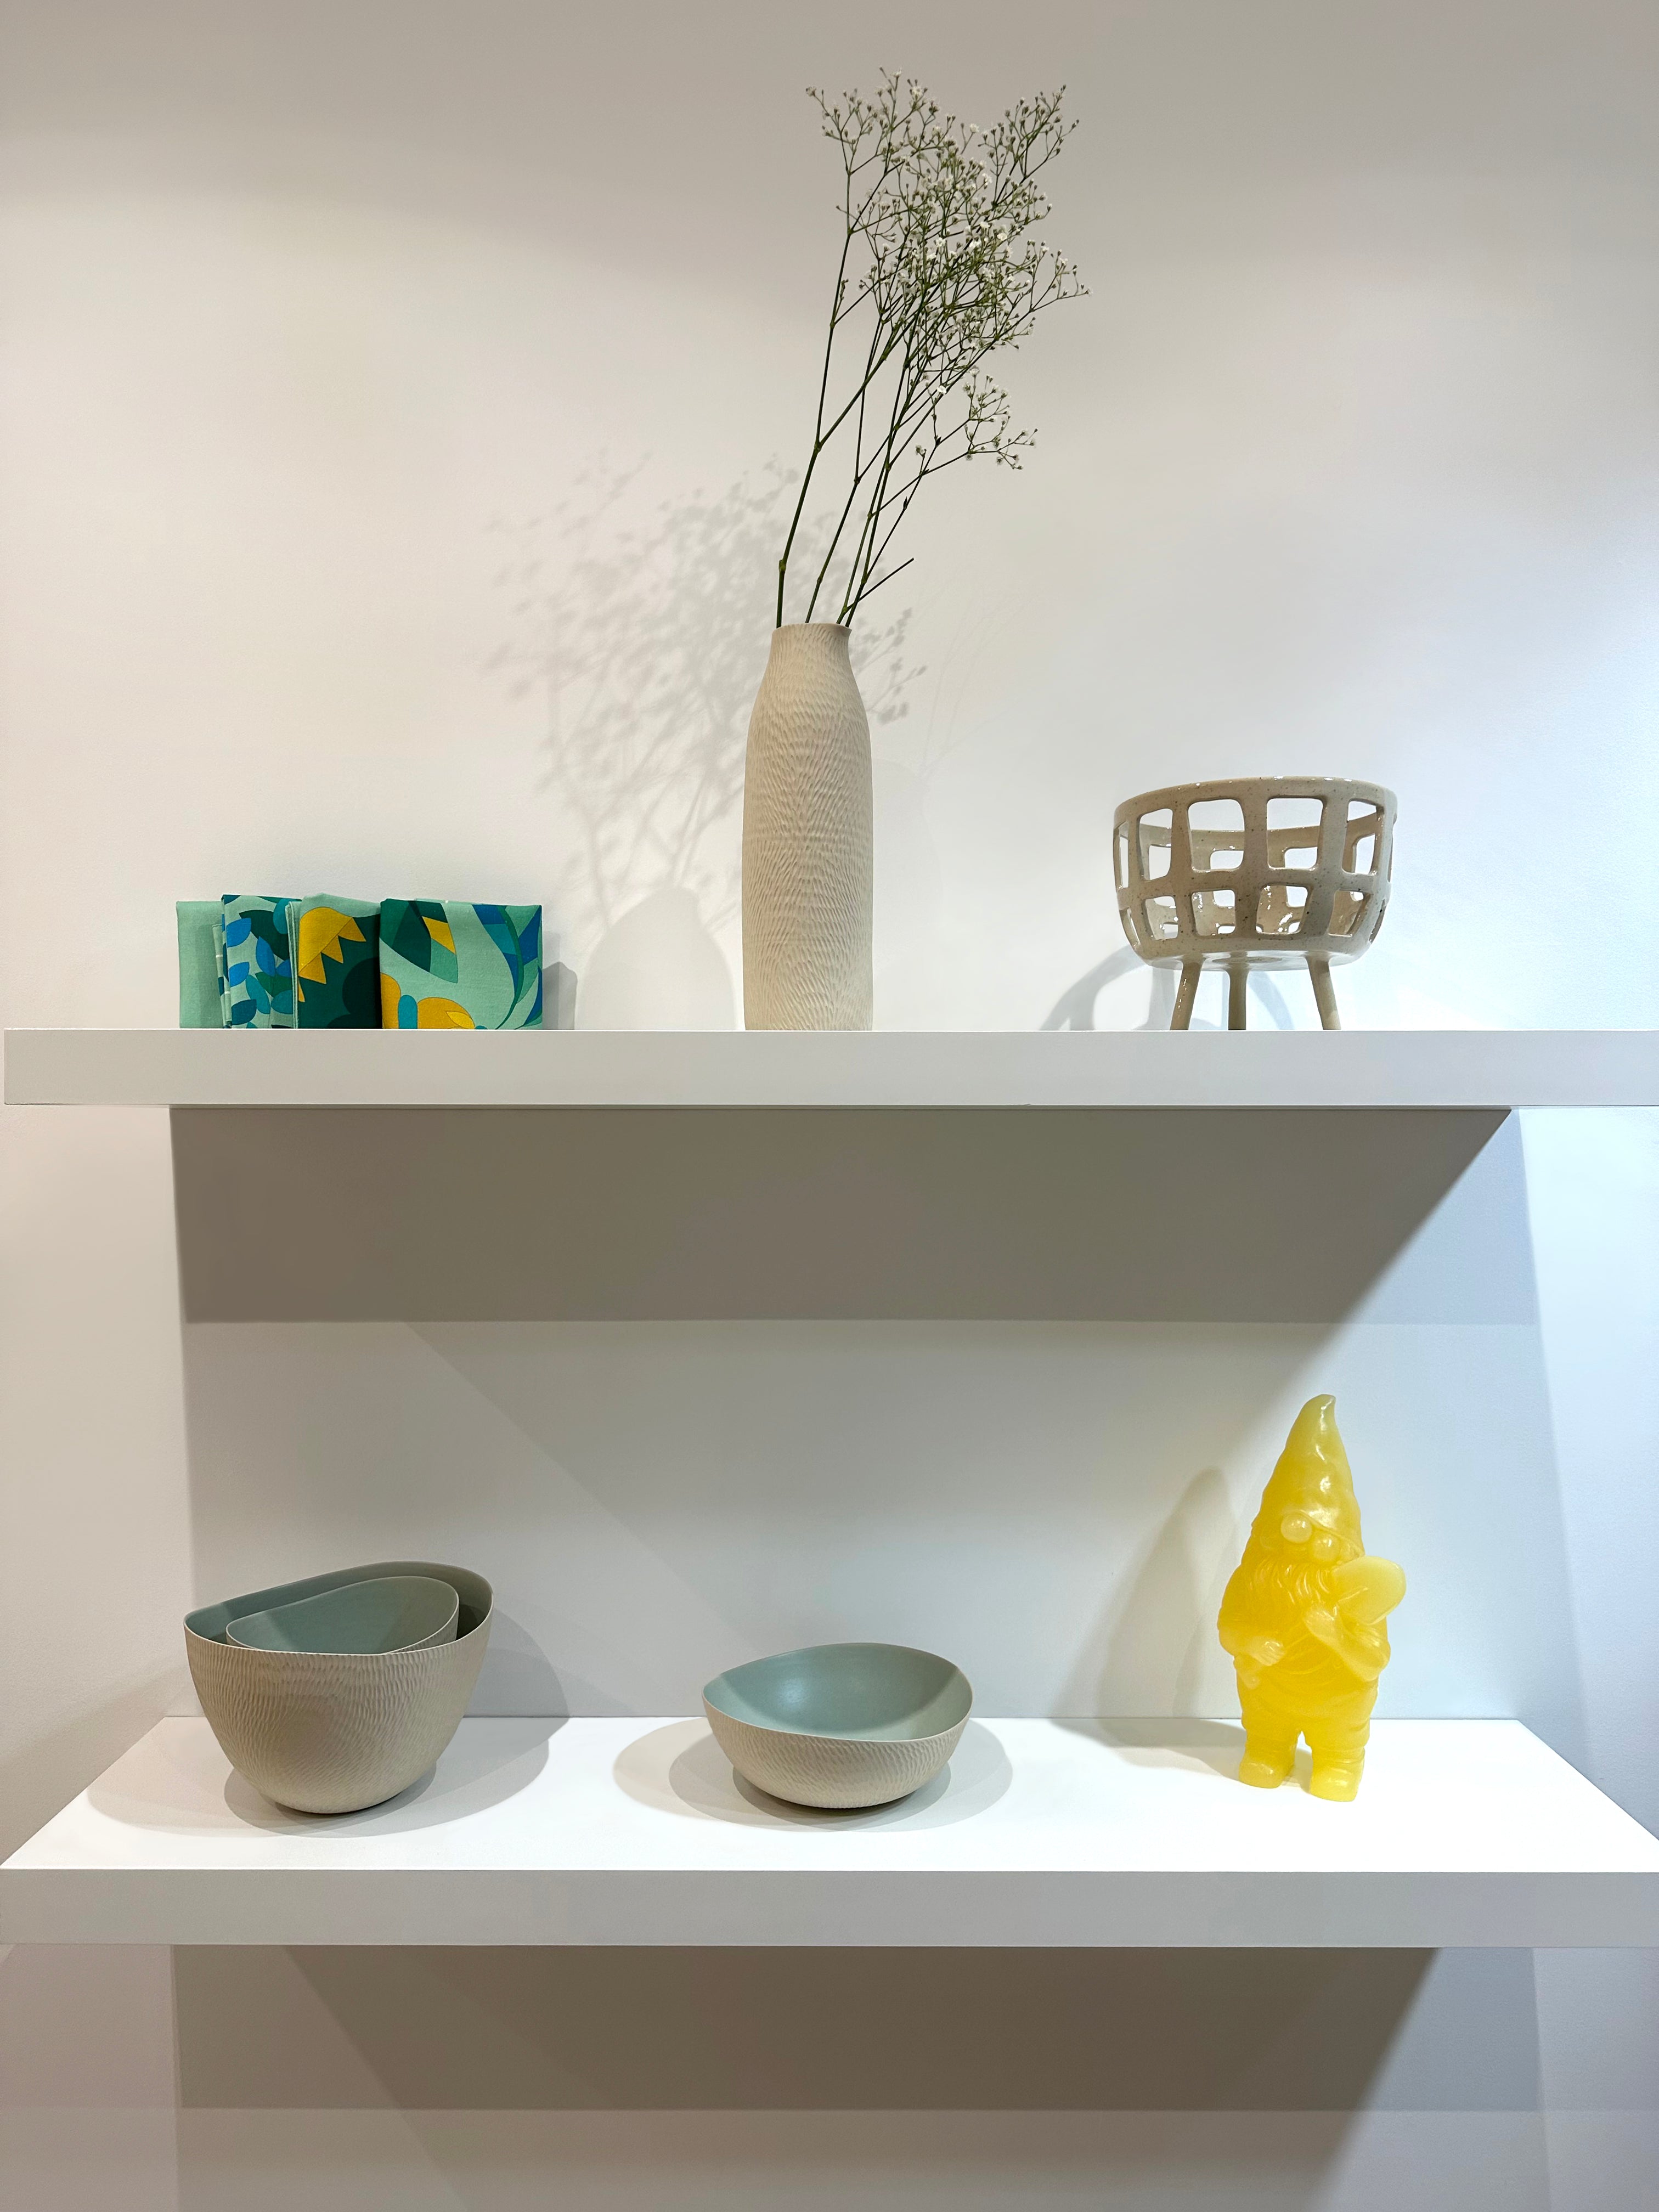 Photo intérieur boutique céramique emmanuelle manche ,panier à fruit Fougasse céramique, nain en cire jaune et sets de table Alto Duo Design